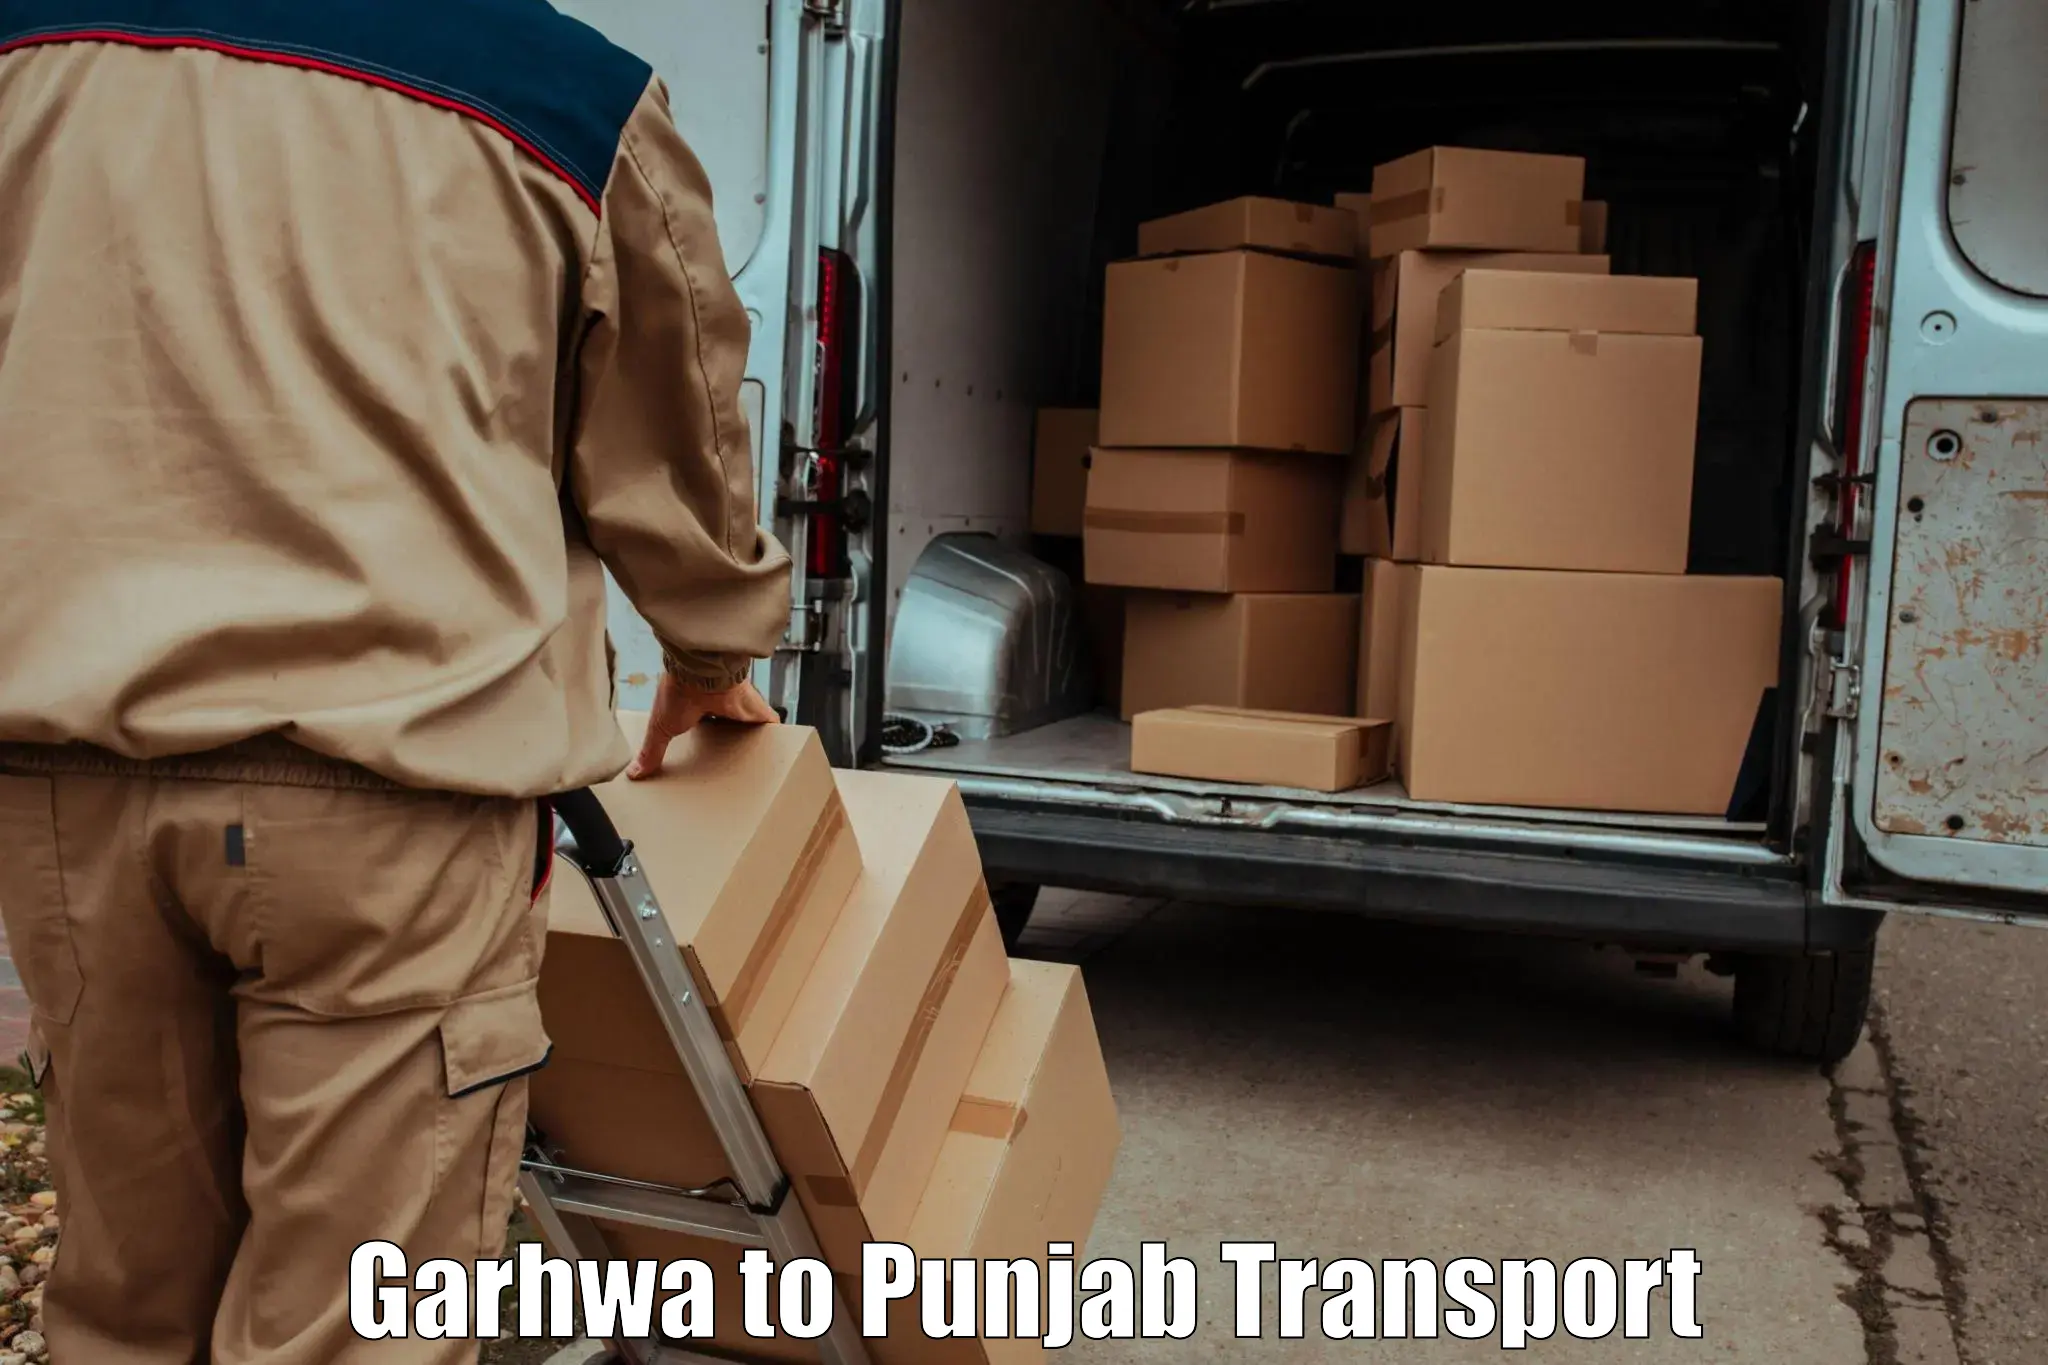 Online transport service Garhwa to Punjab